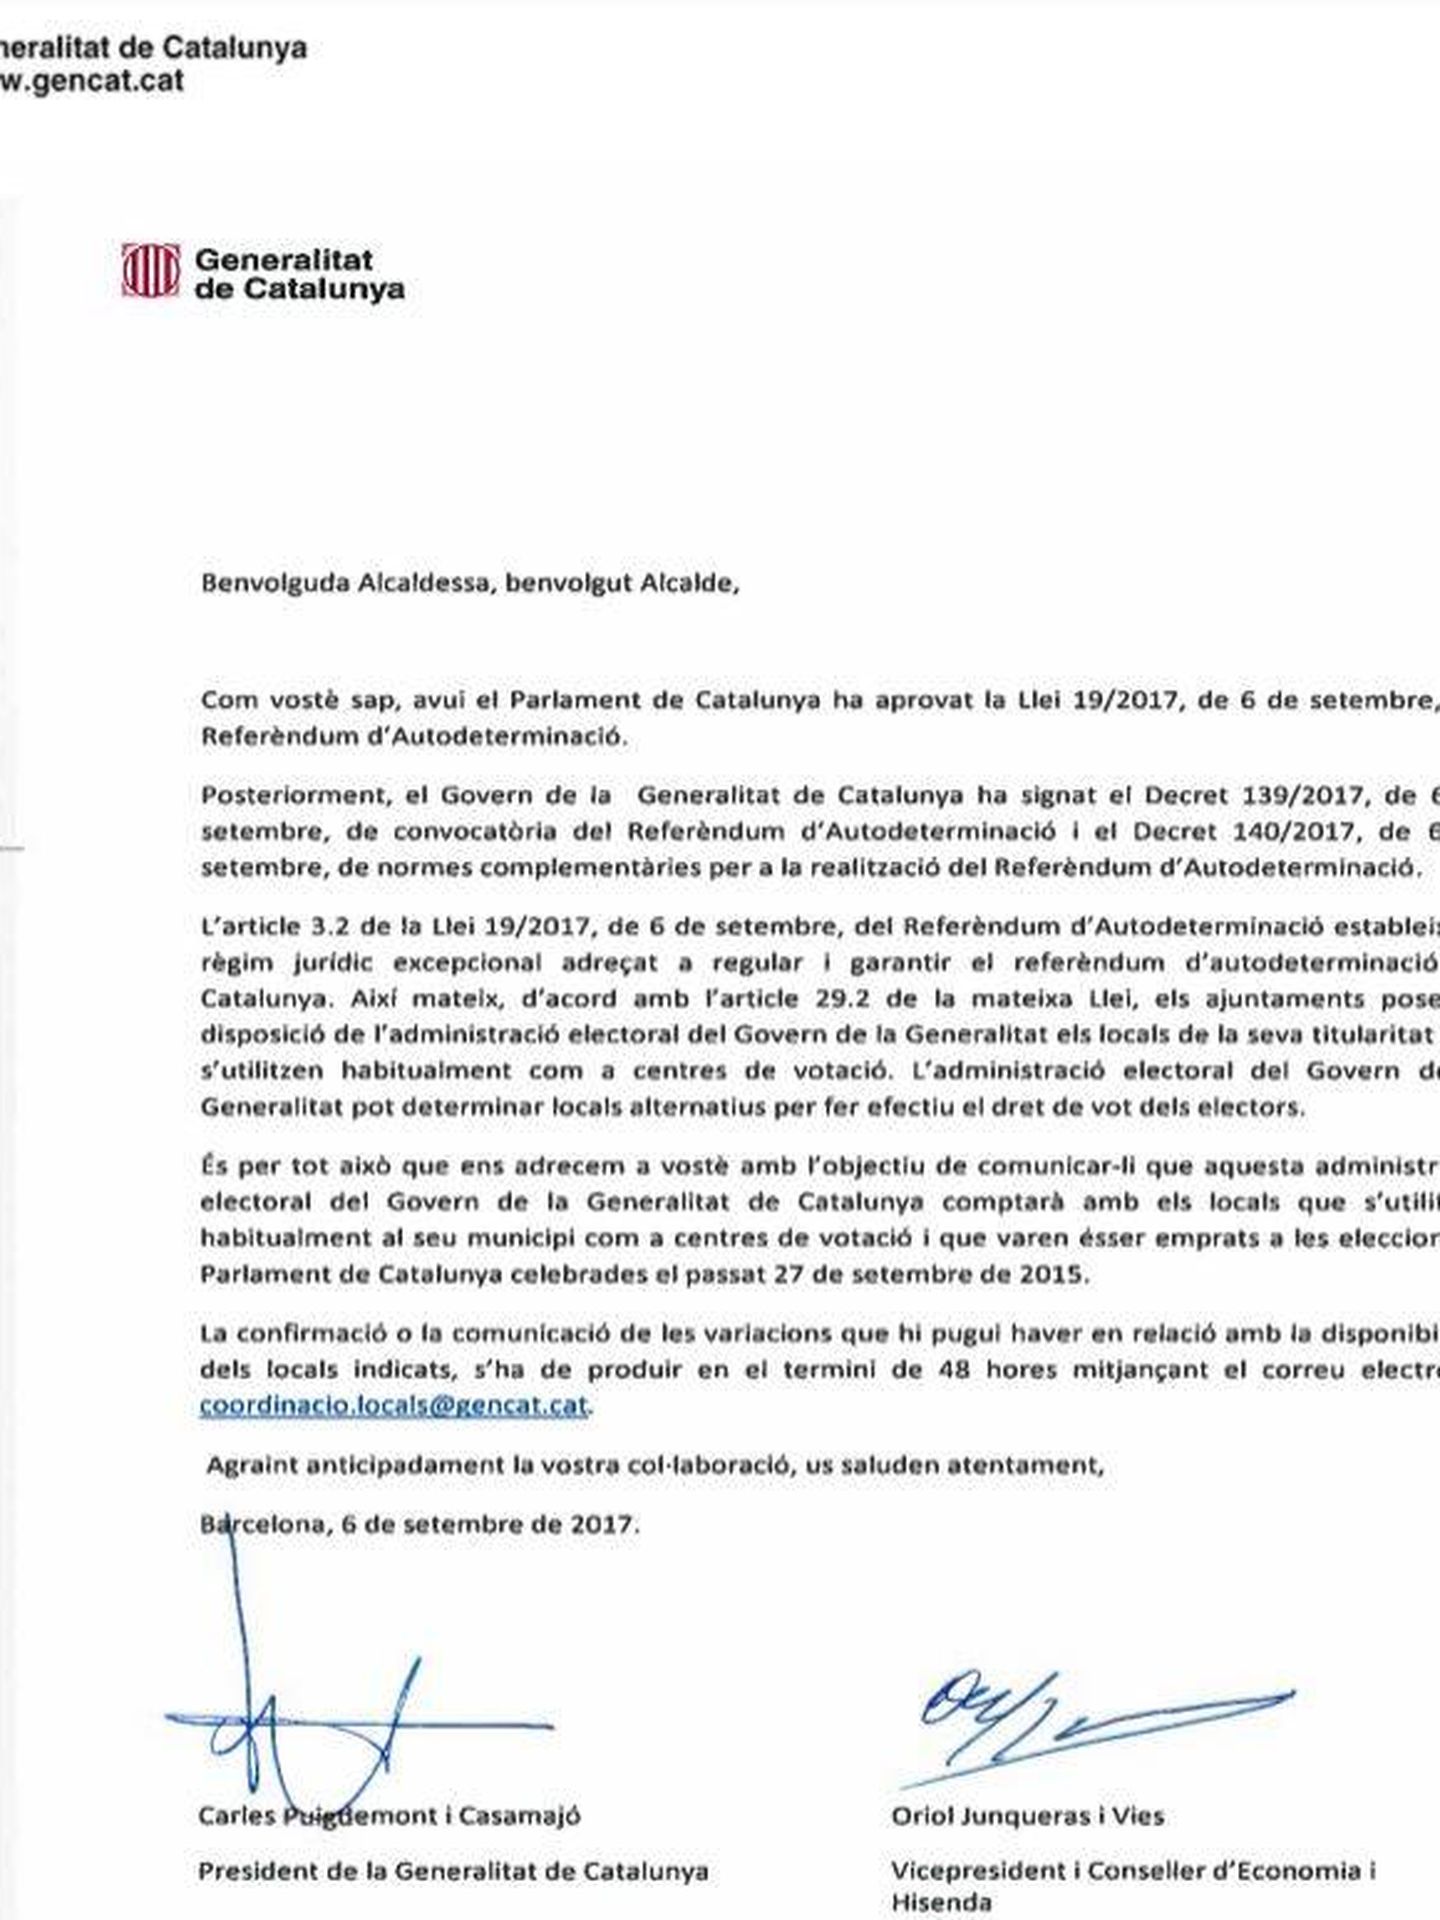 Carta de Puigedmont y Junqueras a los alcaldes catalanes